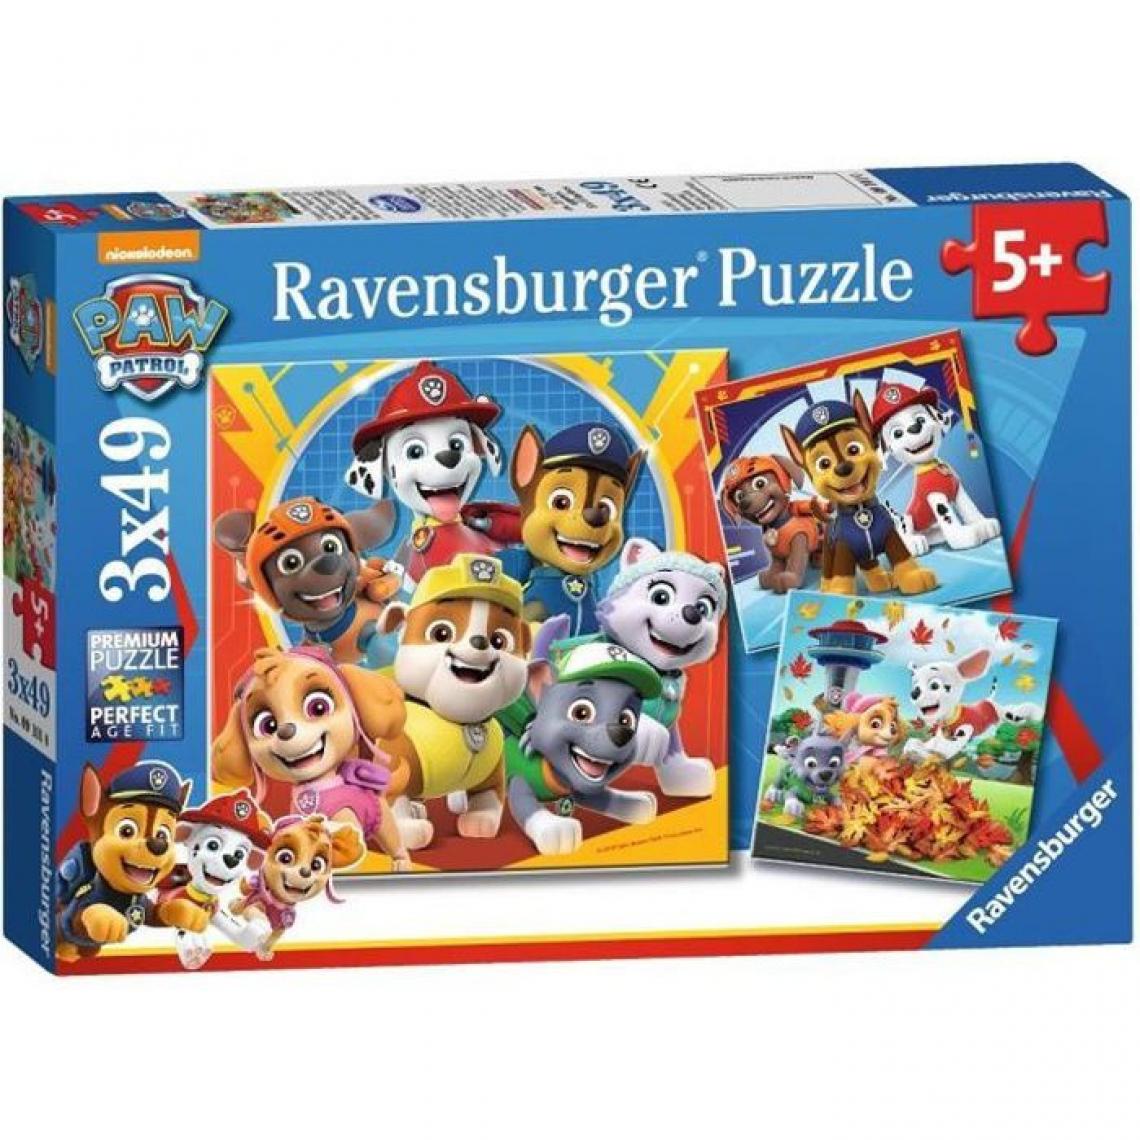 Ravensburger - PAT'PATROUILLE Puzzles 3x49 pieces - Prets a secourir - Ravensburger - Lot de puzzles enfant - Des 5 ans - Animaux